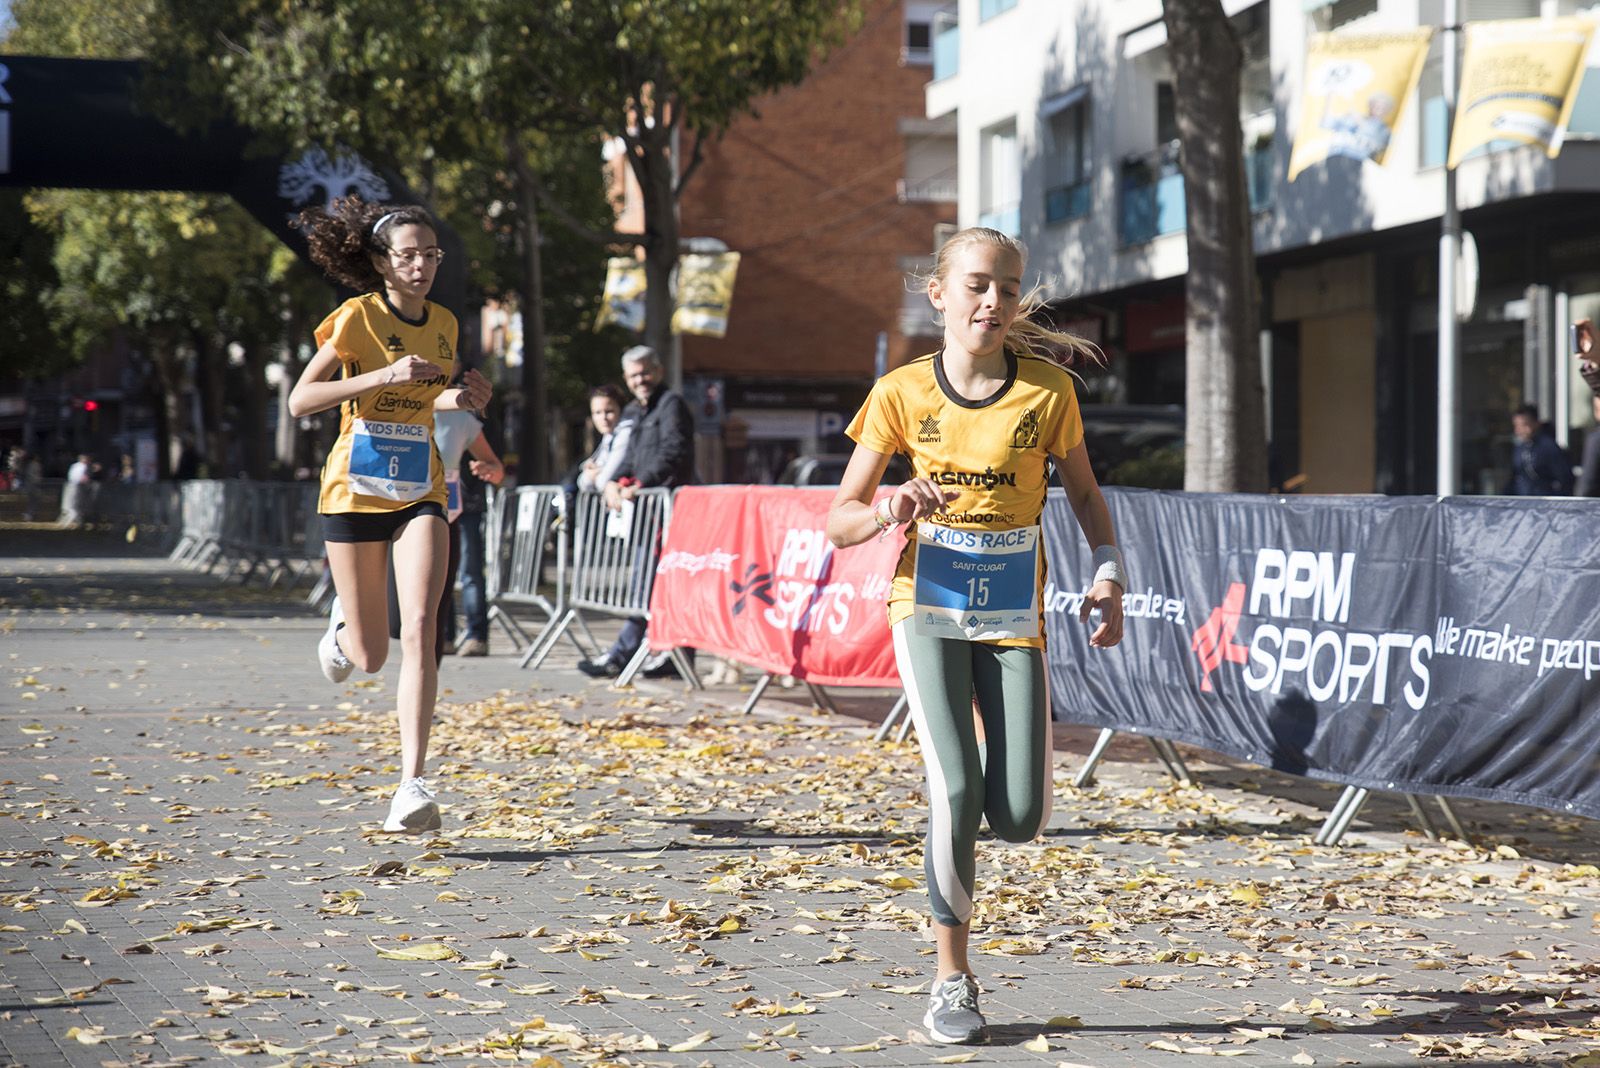 La Kids Race celebra la 1a edició durant la Mitja Marató. FOTO: Bernat Millet.